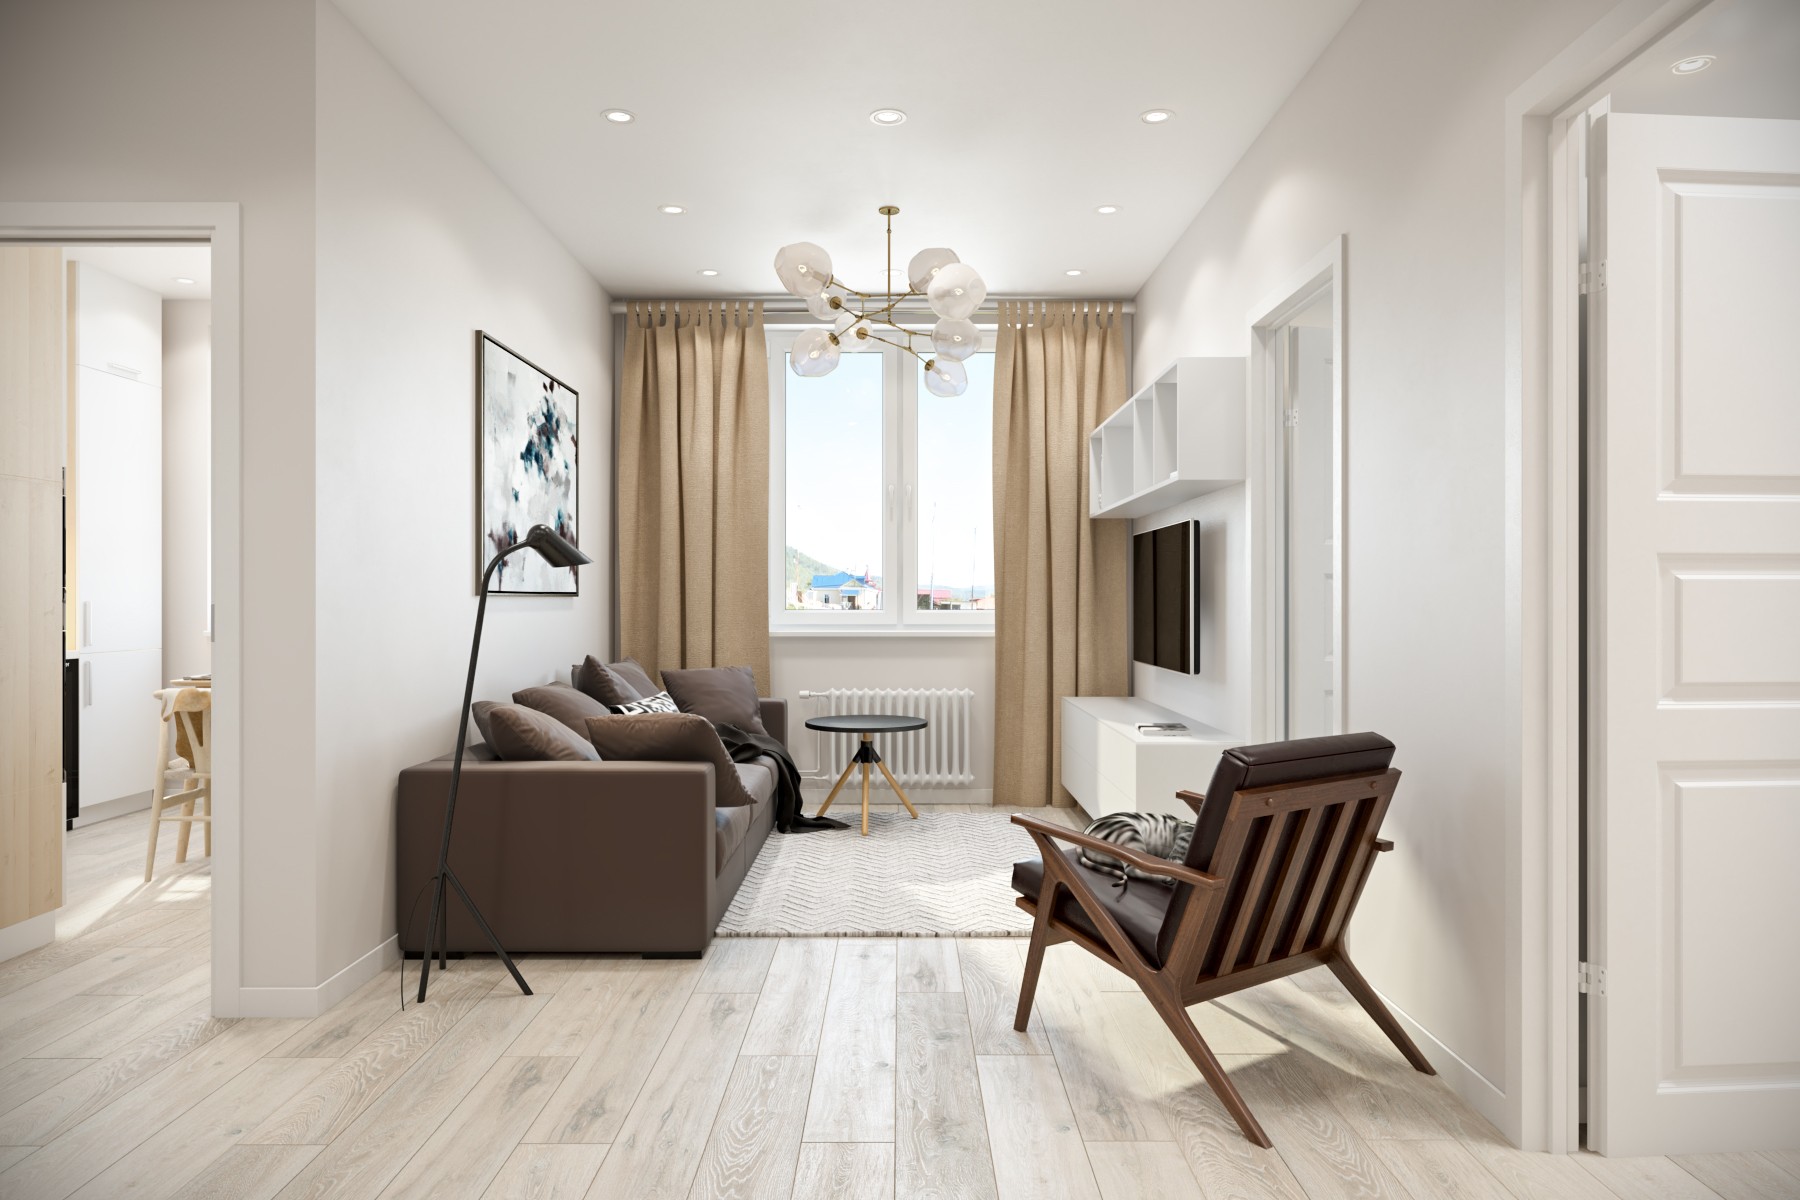 Квартира двухкомнатная фото: Интерьер маленькой квартиры: фото 64 вариантов дизайна